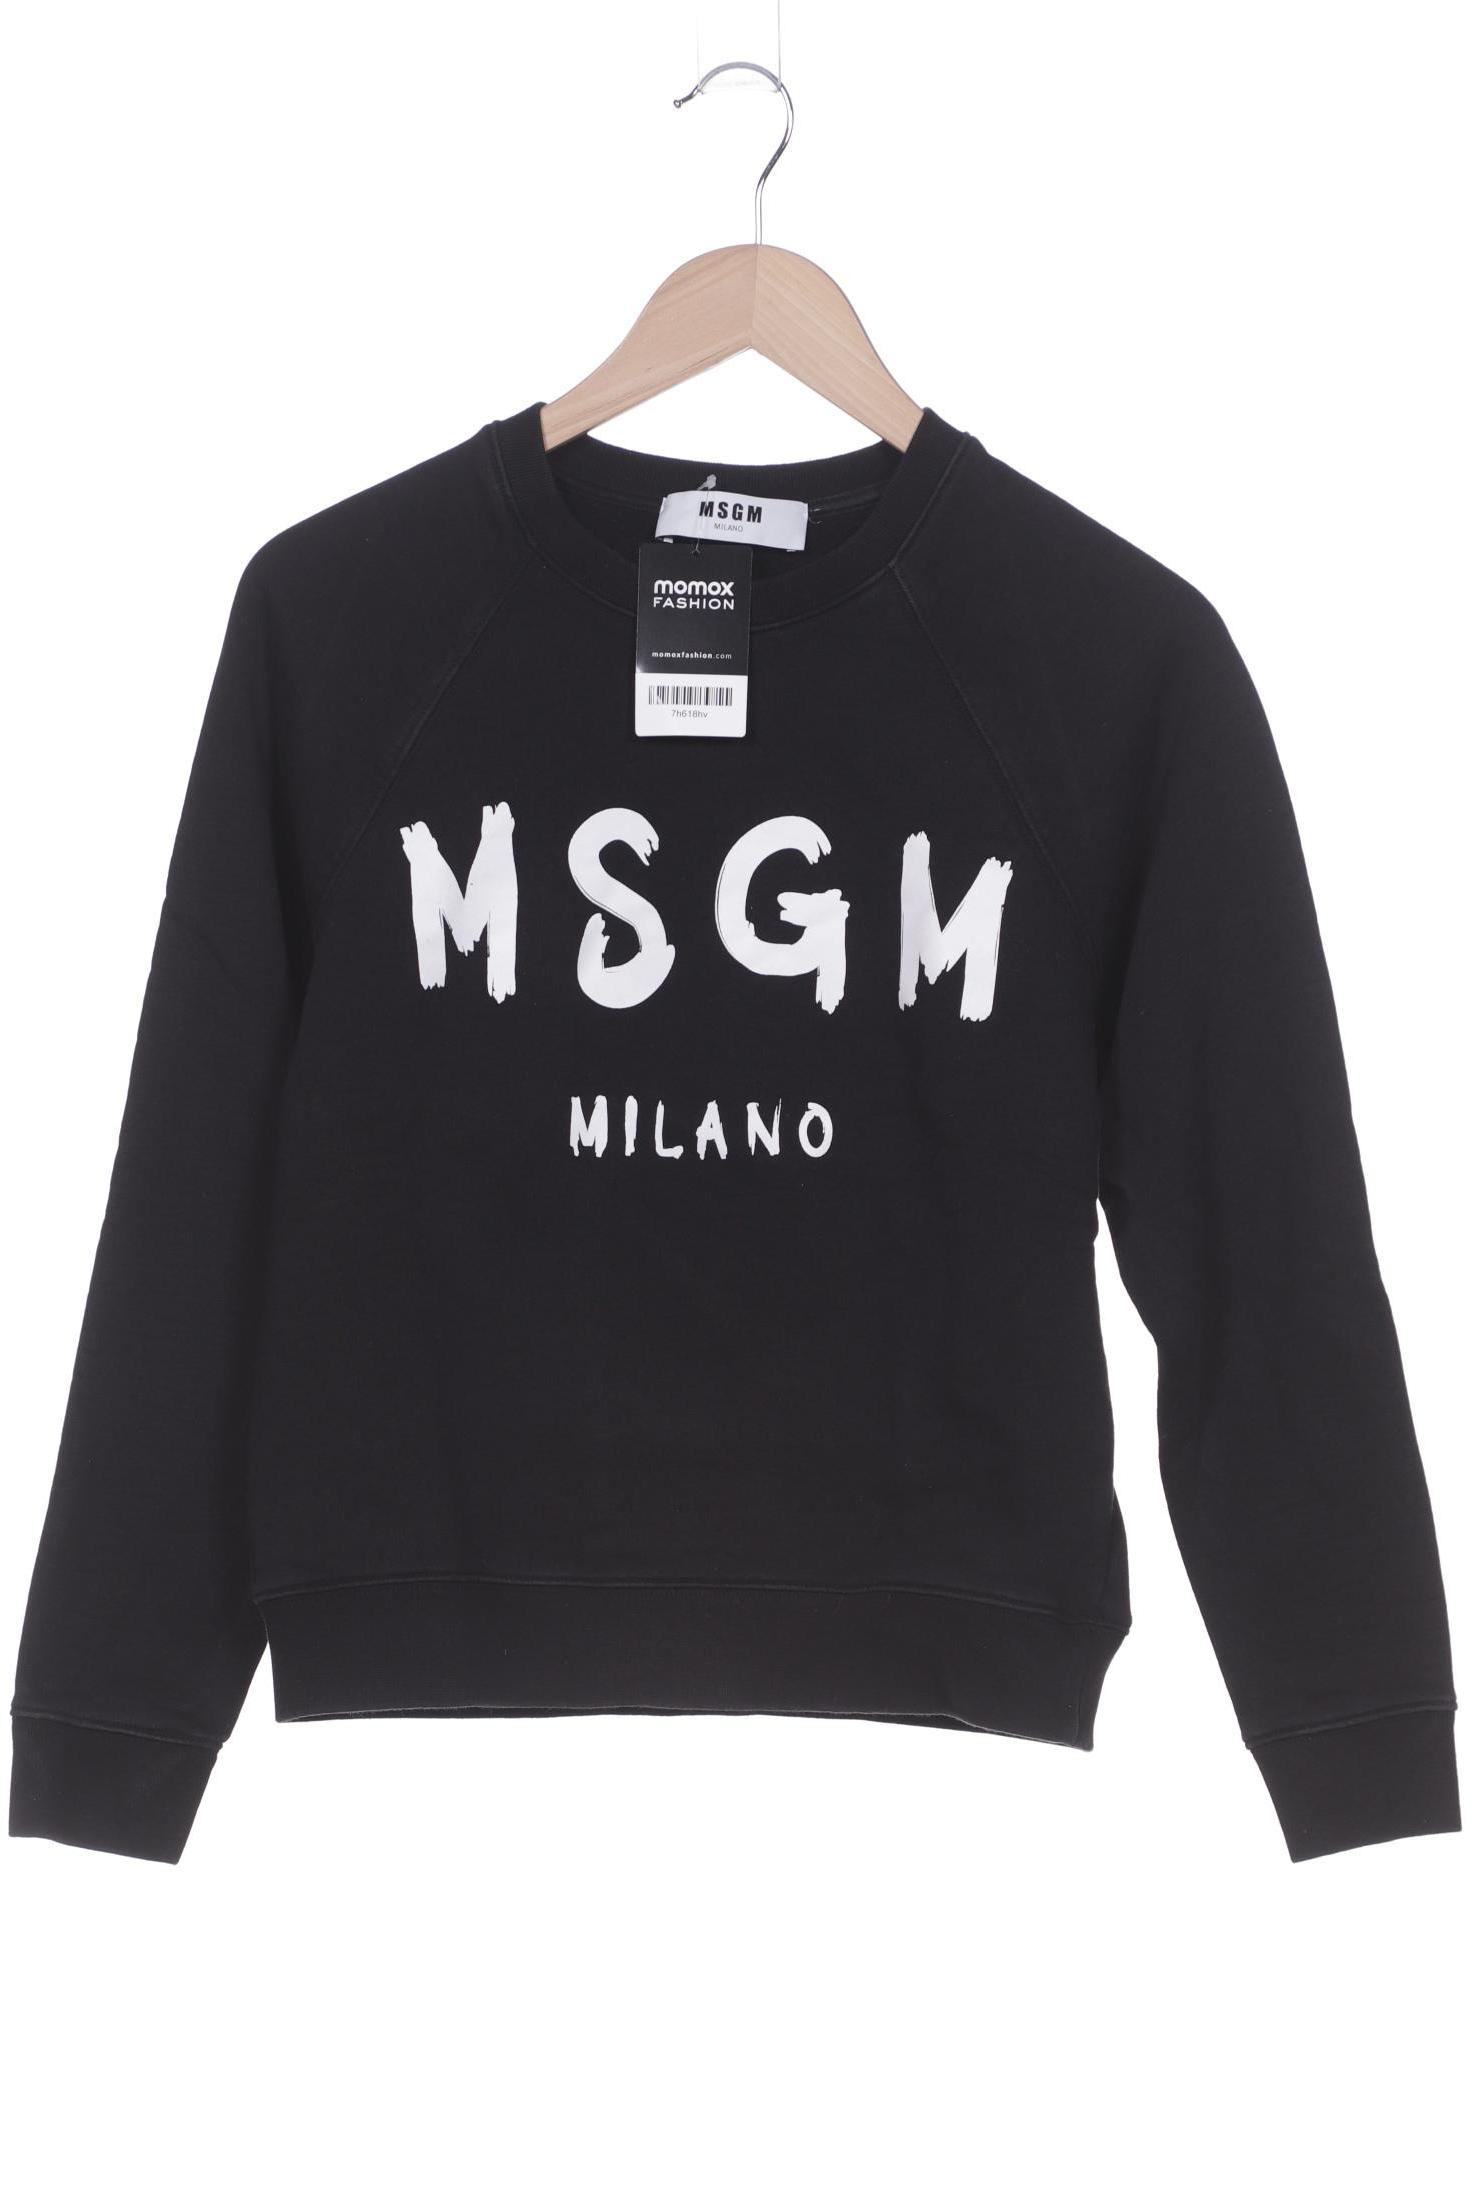 Msgm Damen Sweatshirt, schwarz, Gr. 38 von MSGM